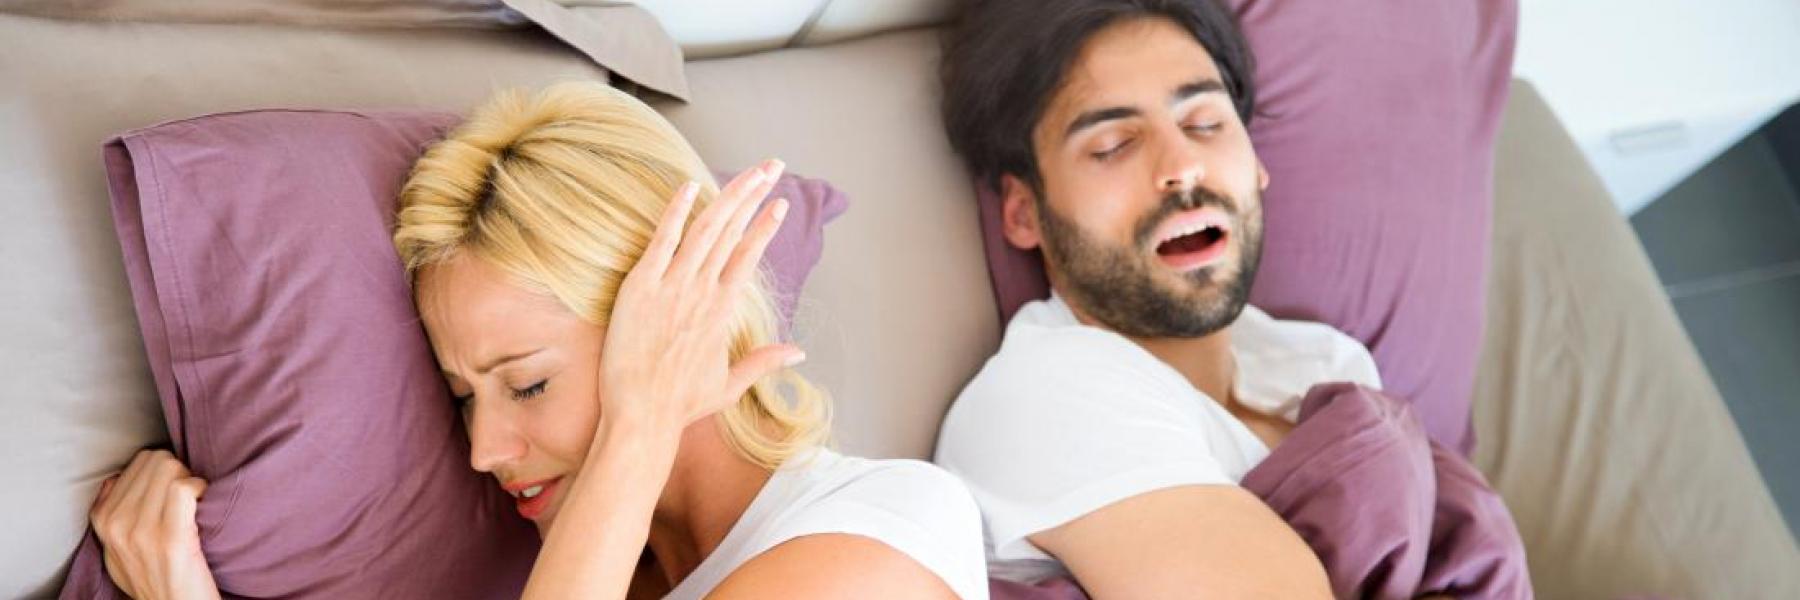 6 نصائح للتعامل مع زوجك الذي يعاني من الشخير أثناء النوم